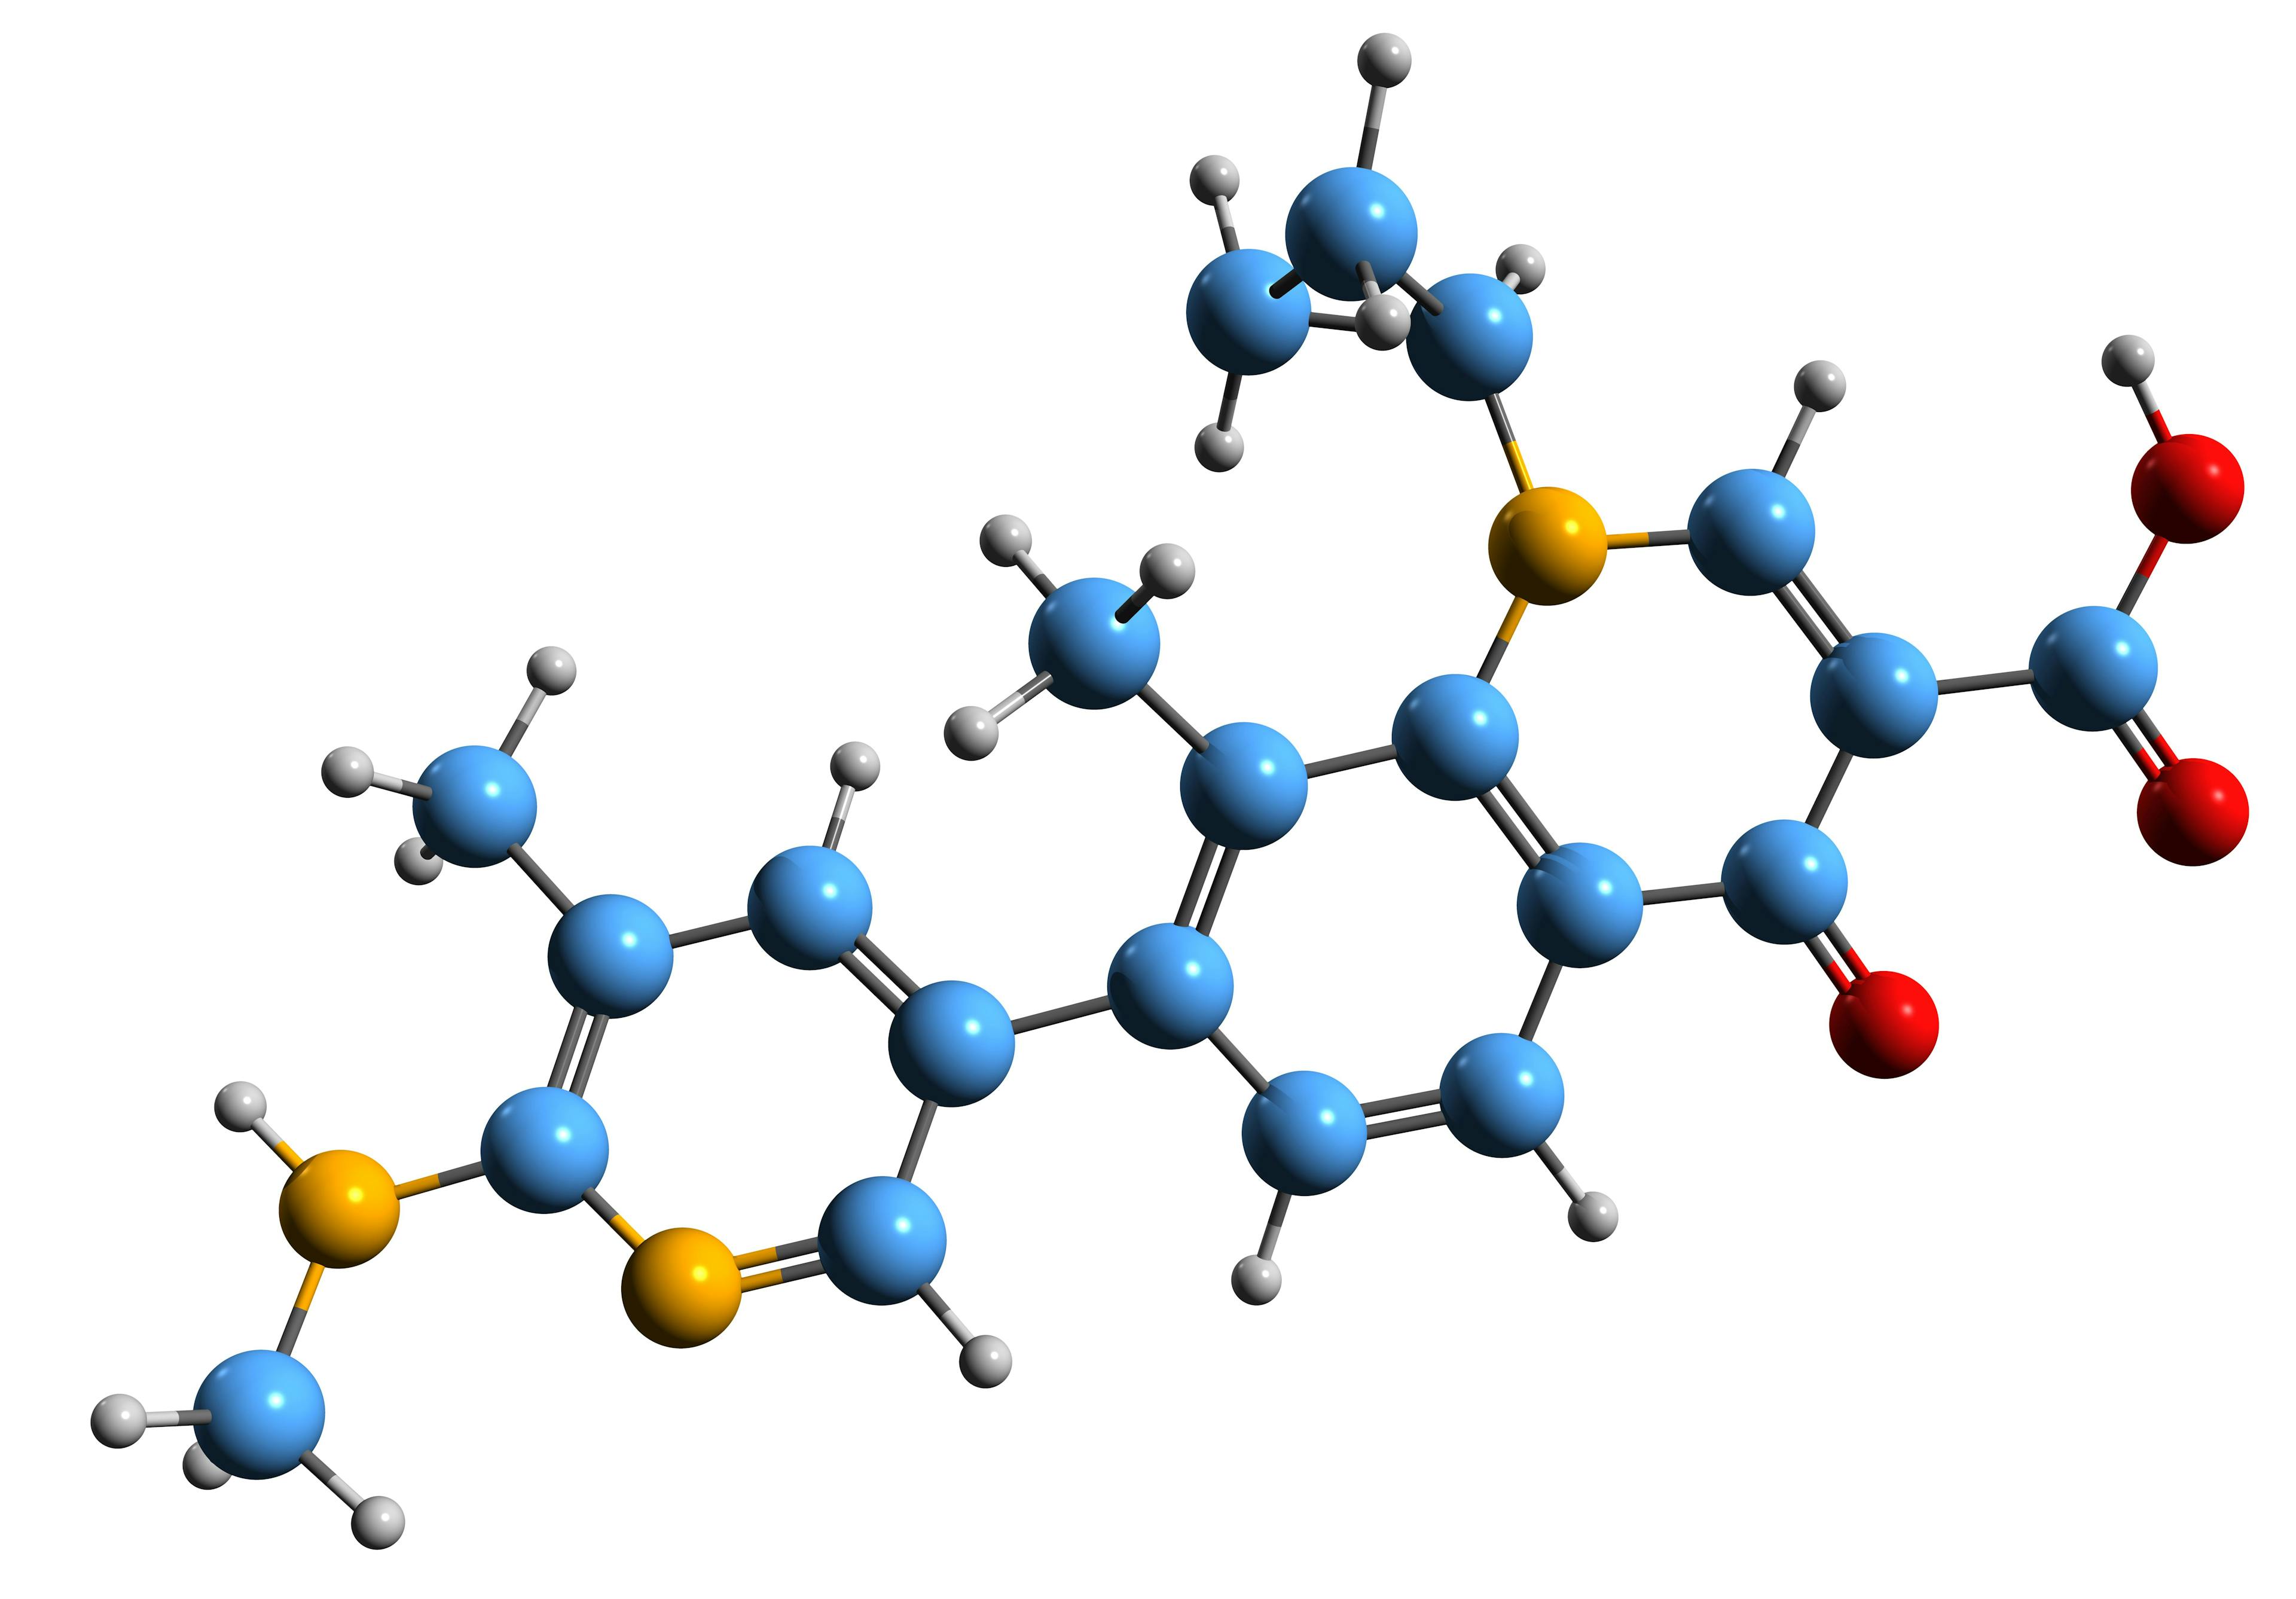 3D image of Ozenoxacin skeletal formula - molecular chemical structure of Impetigo medication isolated on white background | Image Credit: © kseniyaomega - stock.adobe.com